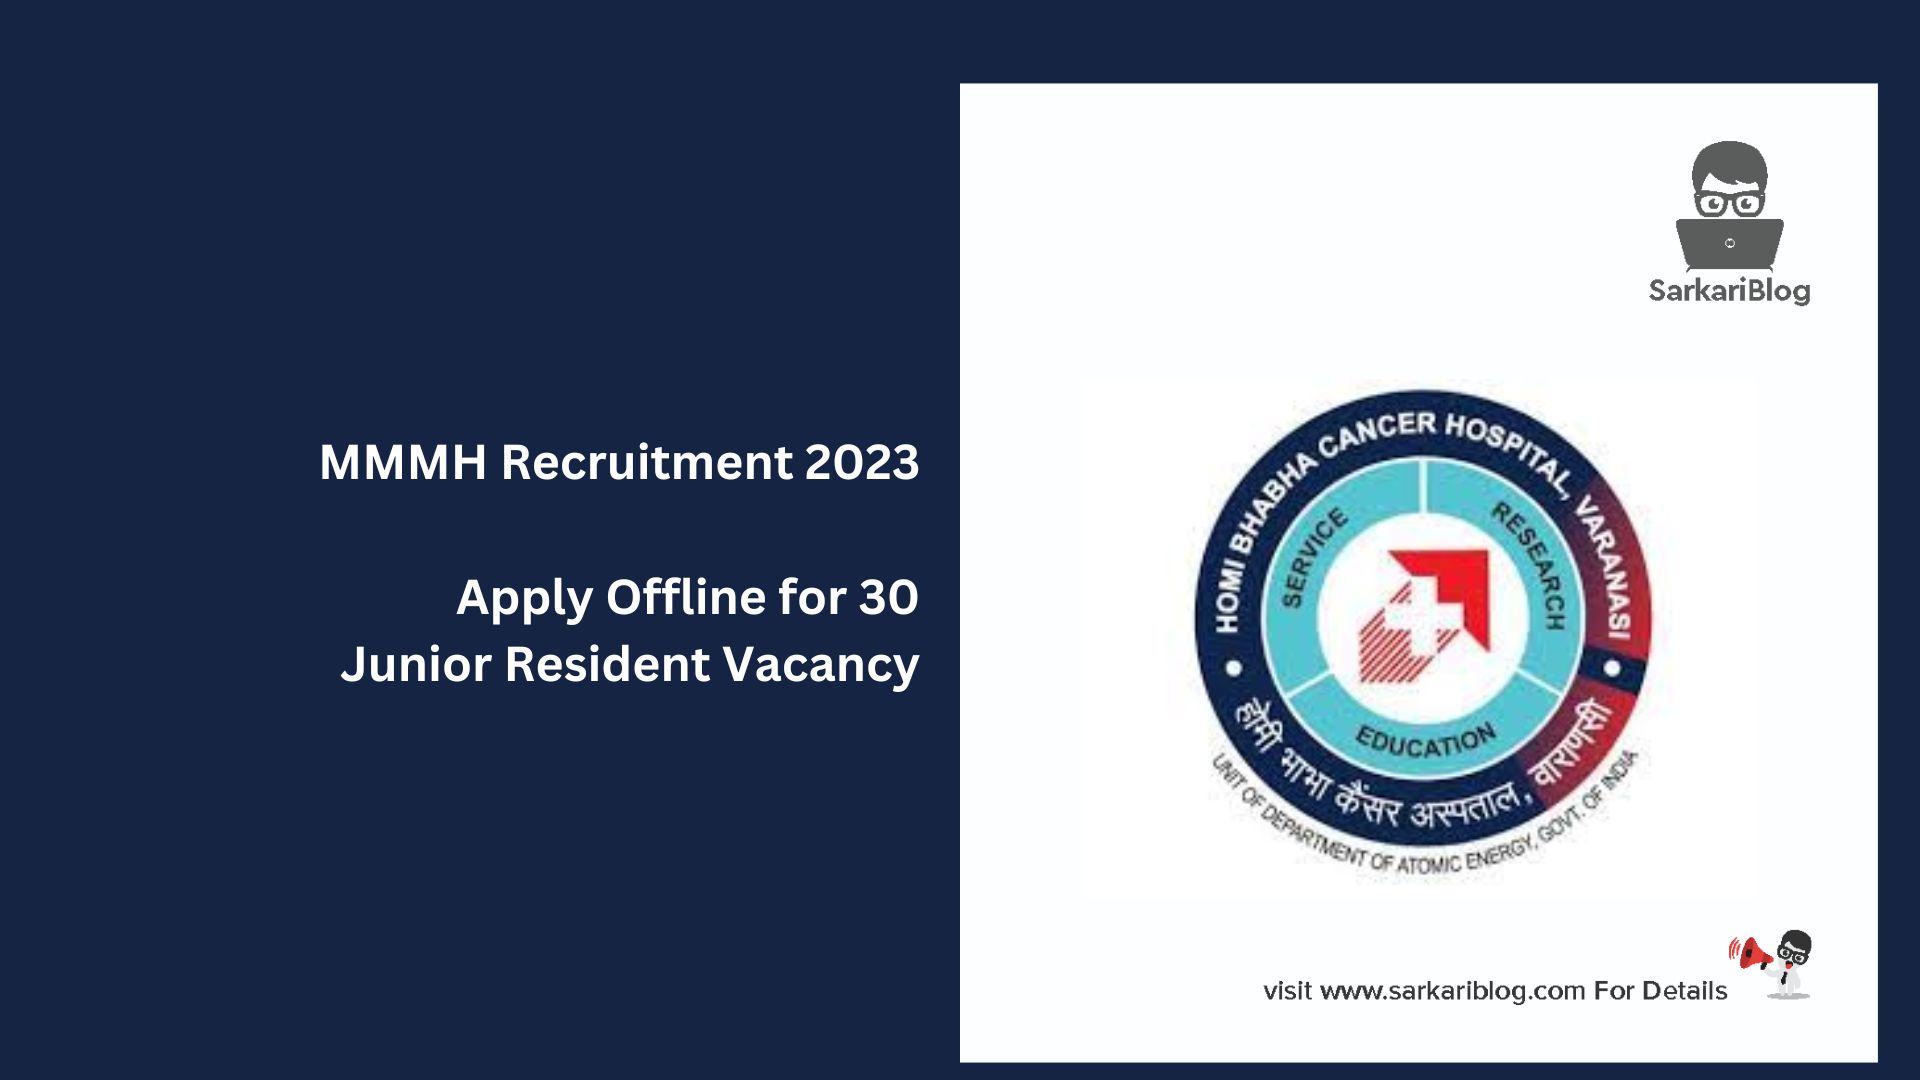 MMMH Recruitment 2023